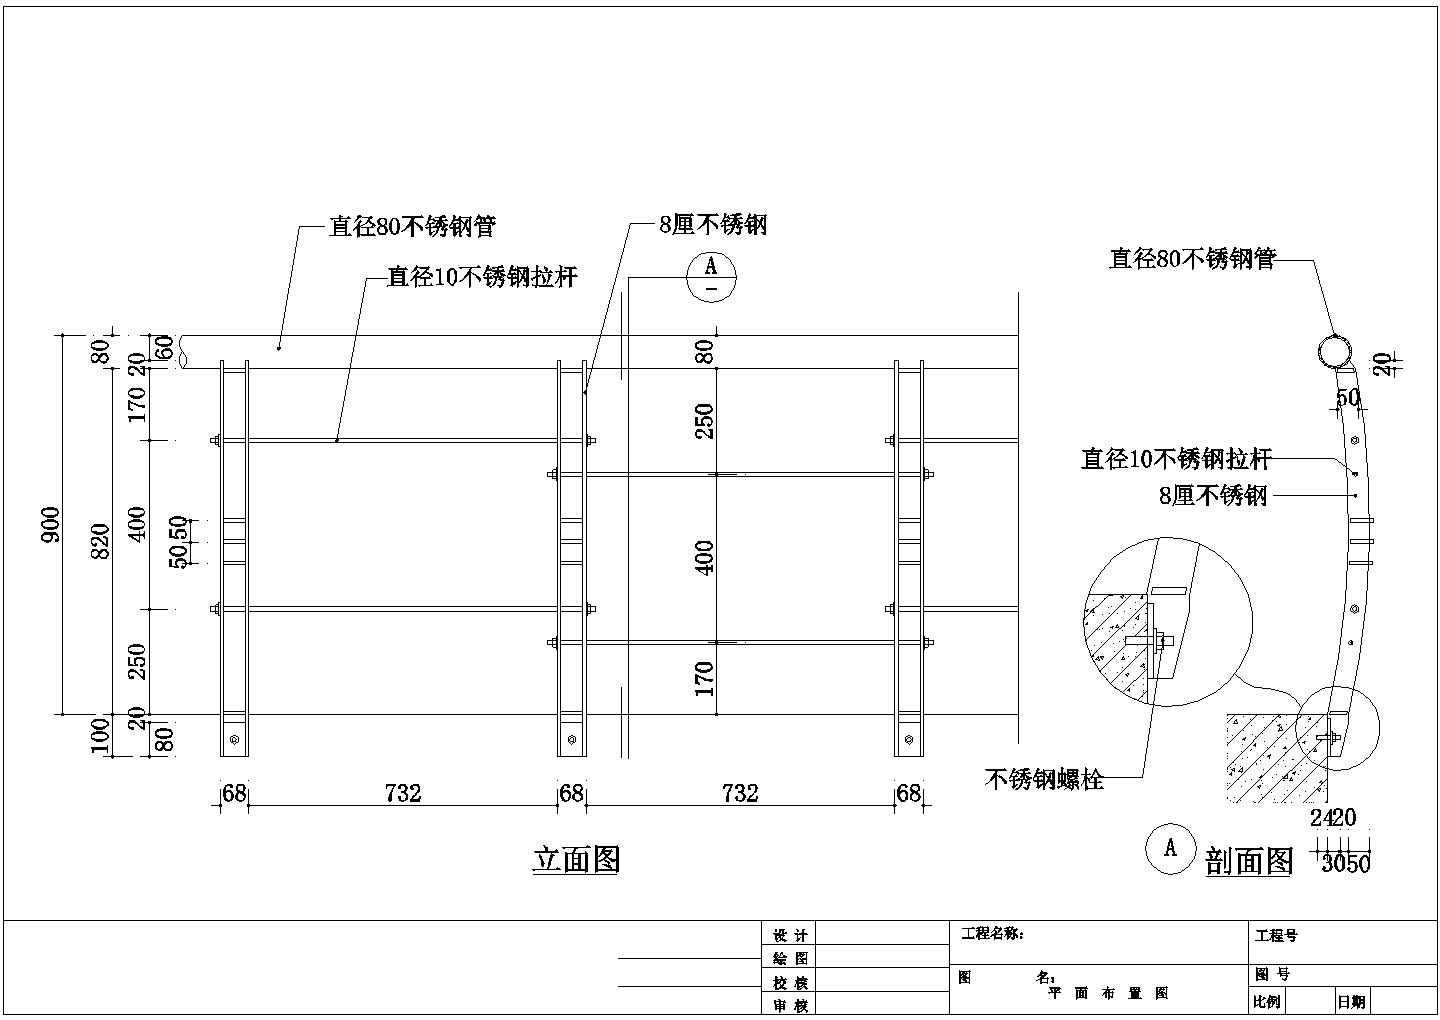 【江苏省】常州市网吧CAD施工图设计图纸